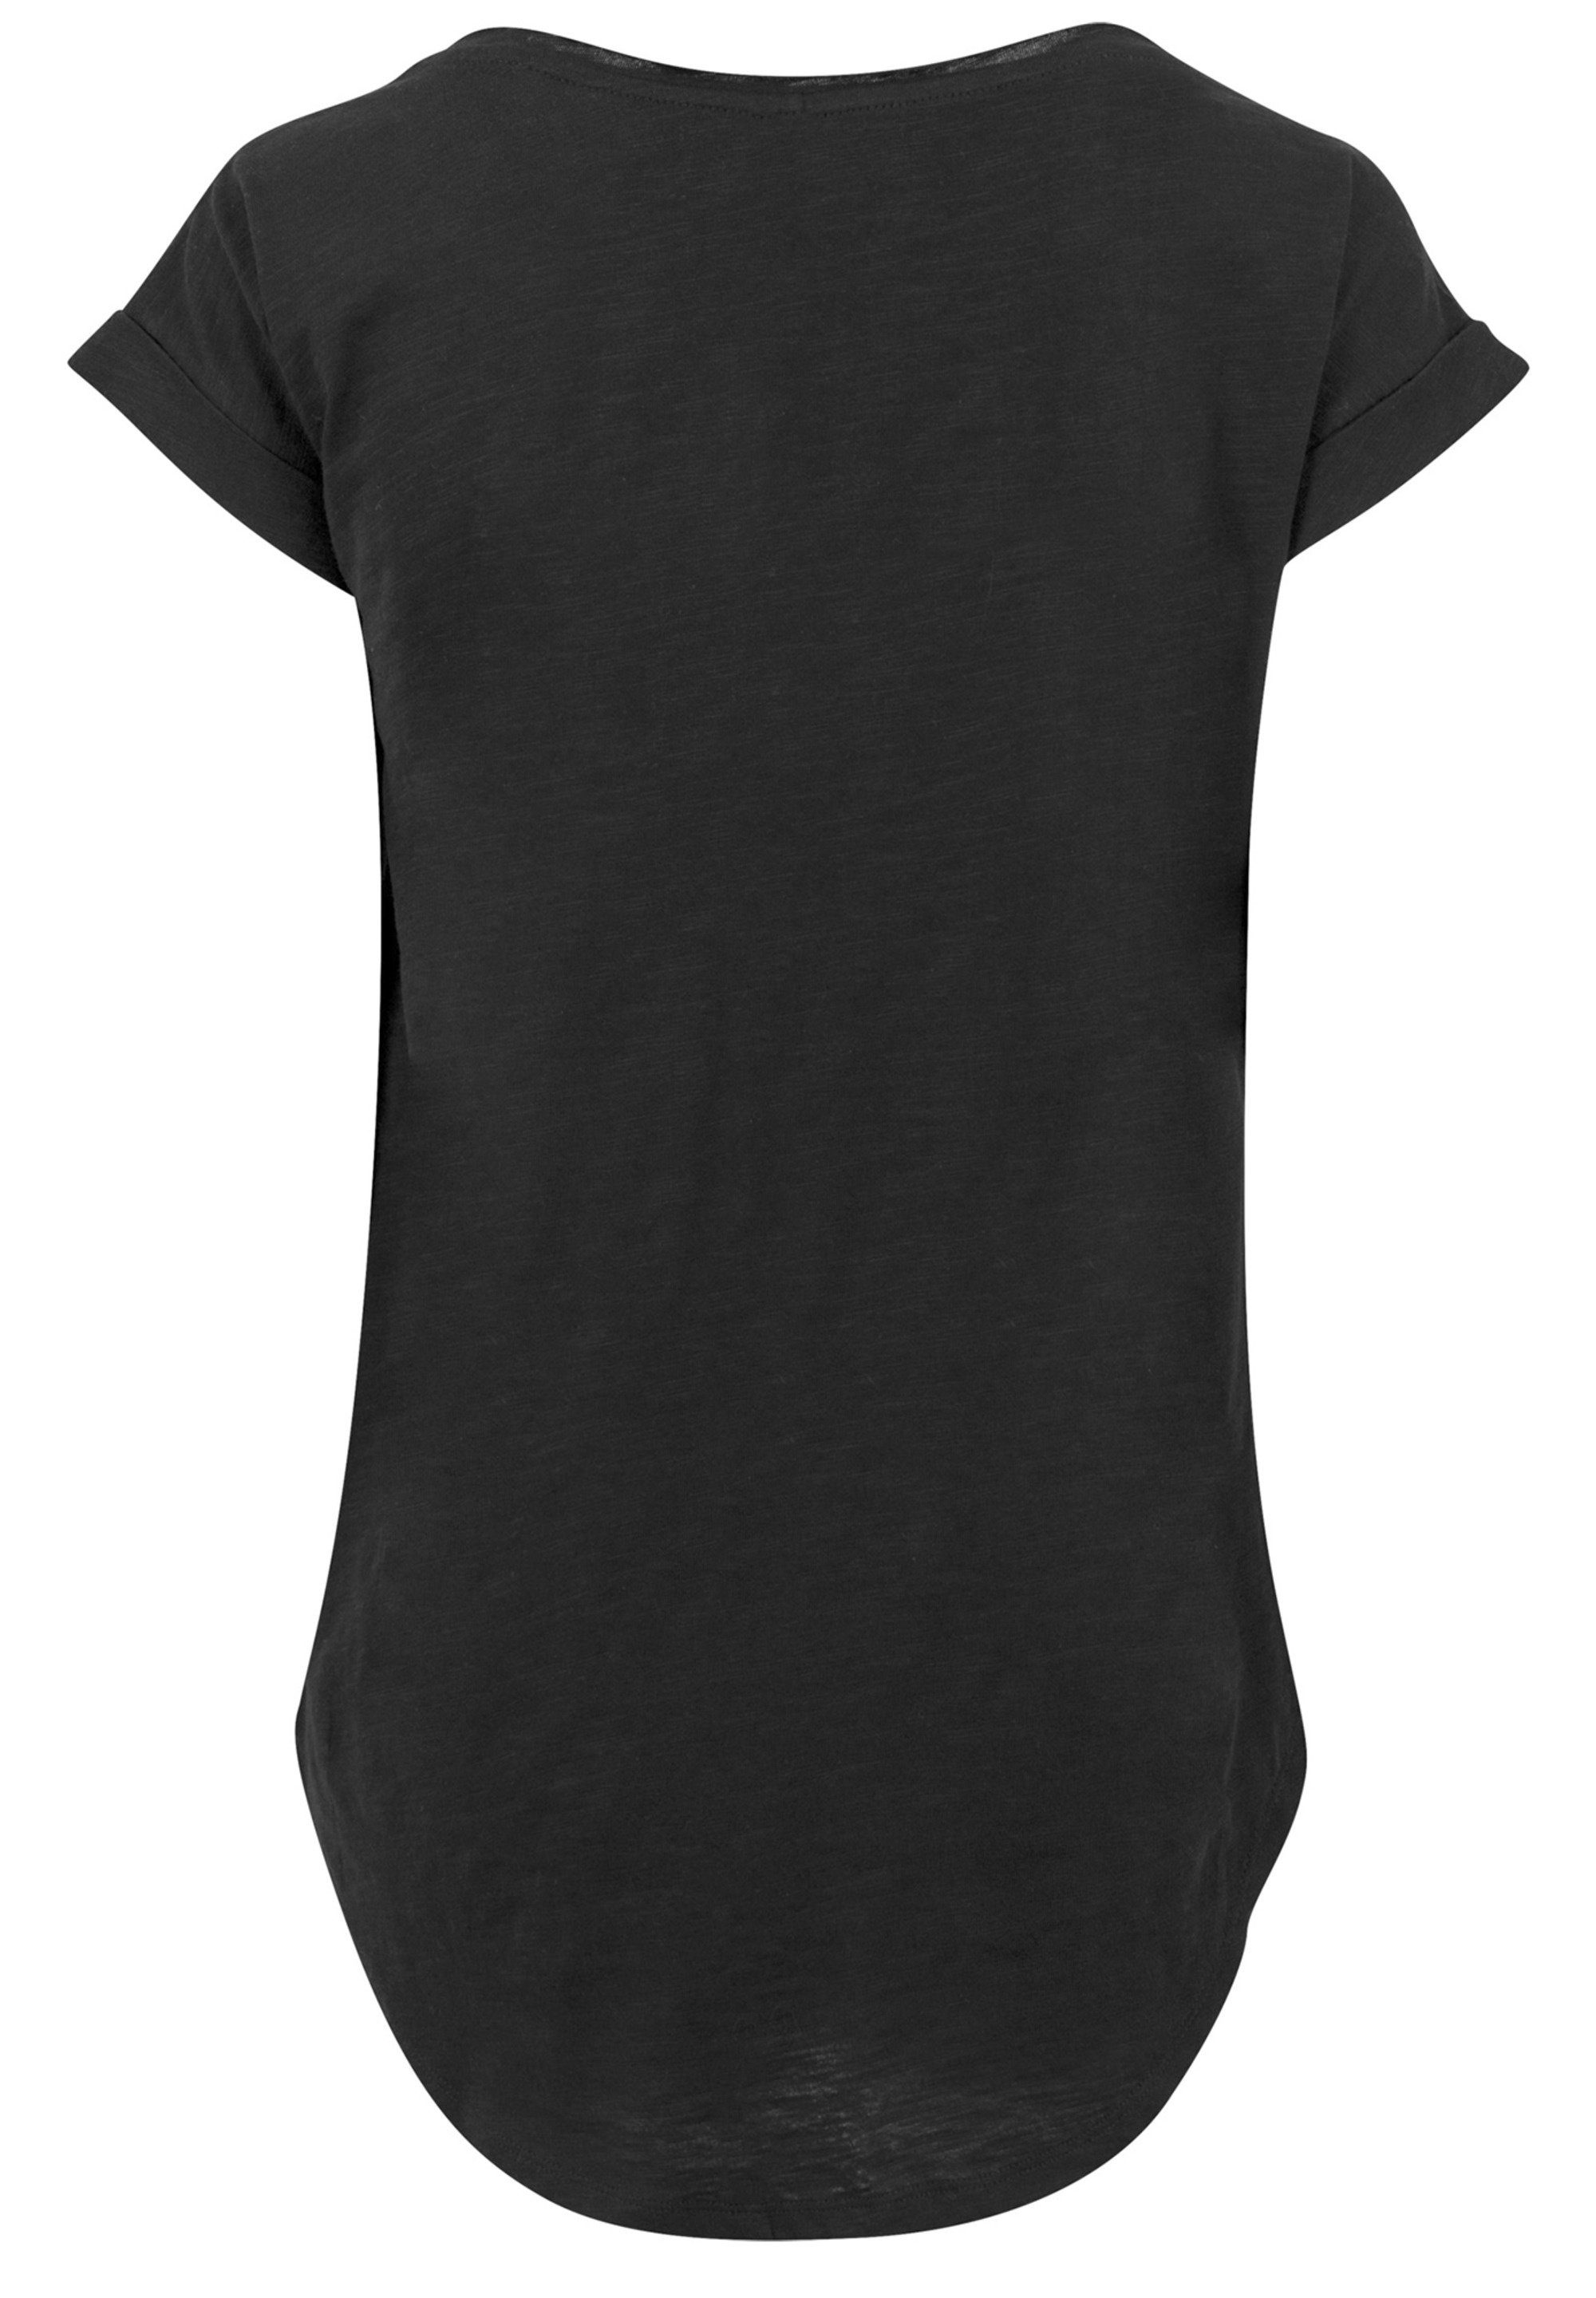 T-Shirt Iron Tragekomfort Baumwollstoff F4NT4STIC hohem mit Endgame Brushed Print, weicher Sehr Marvel Man